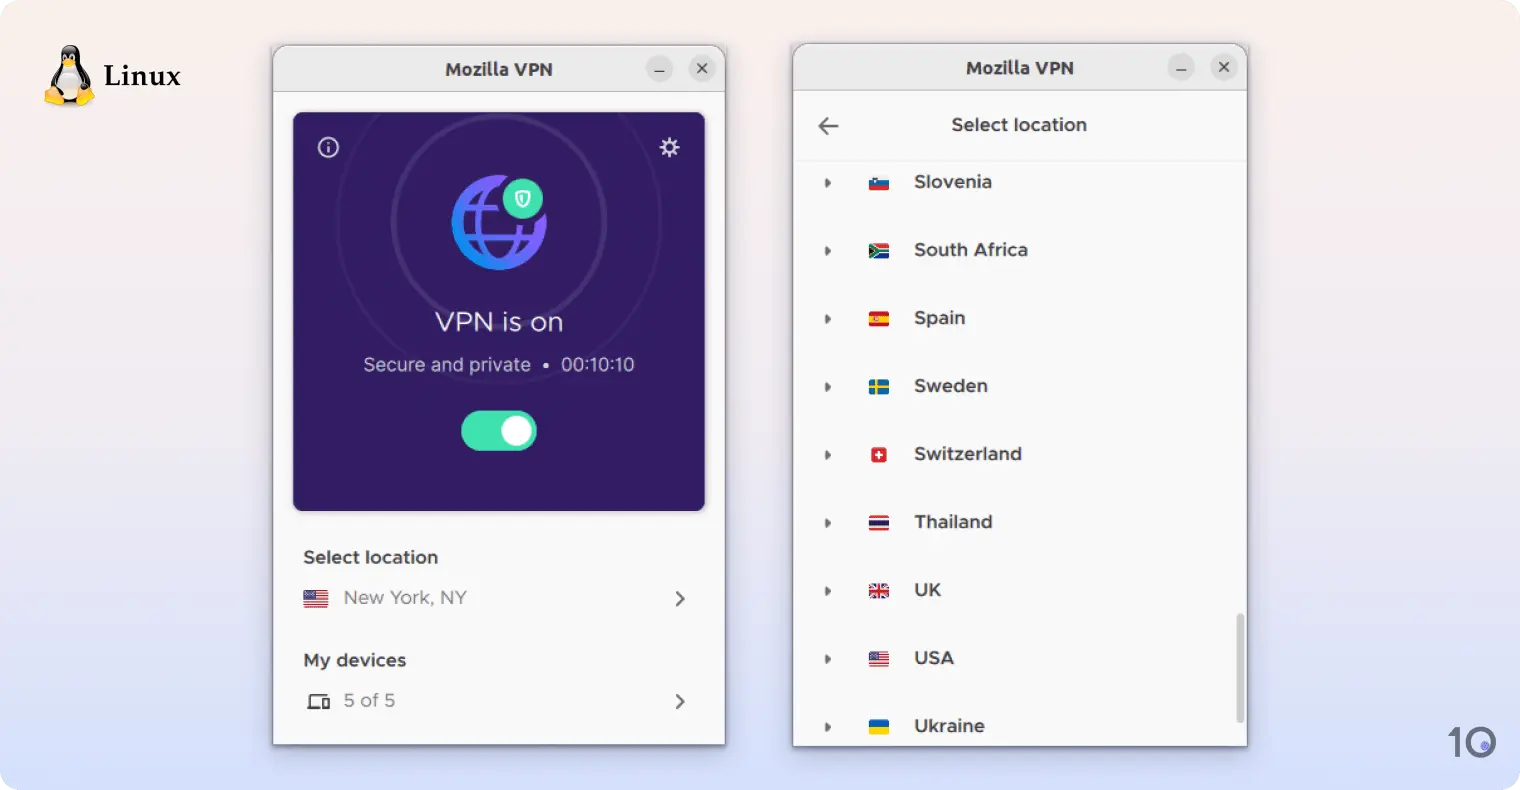 La aplicación de Mozilla VPN para Linux